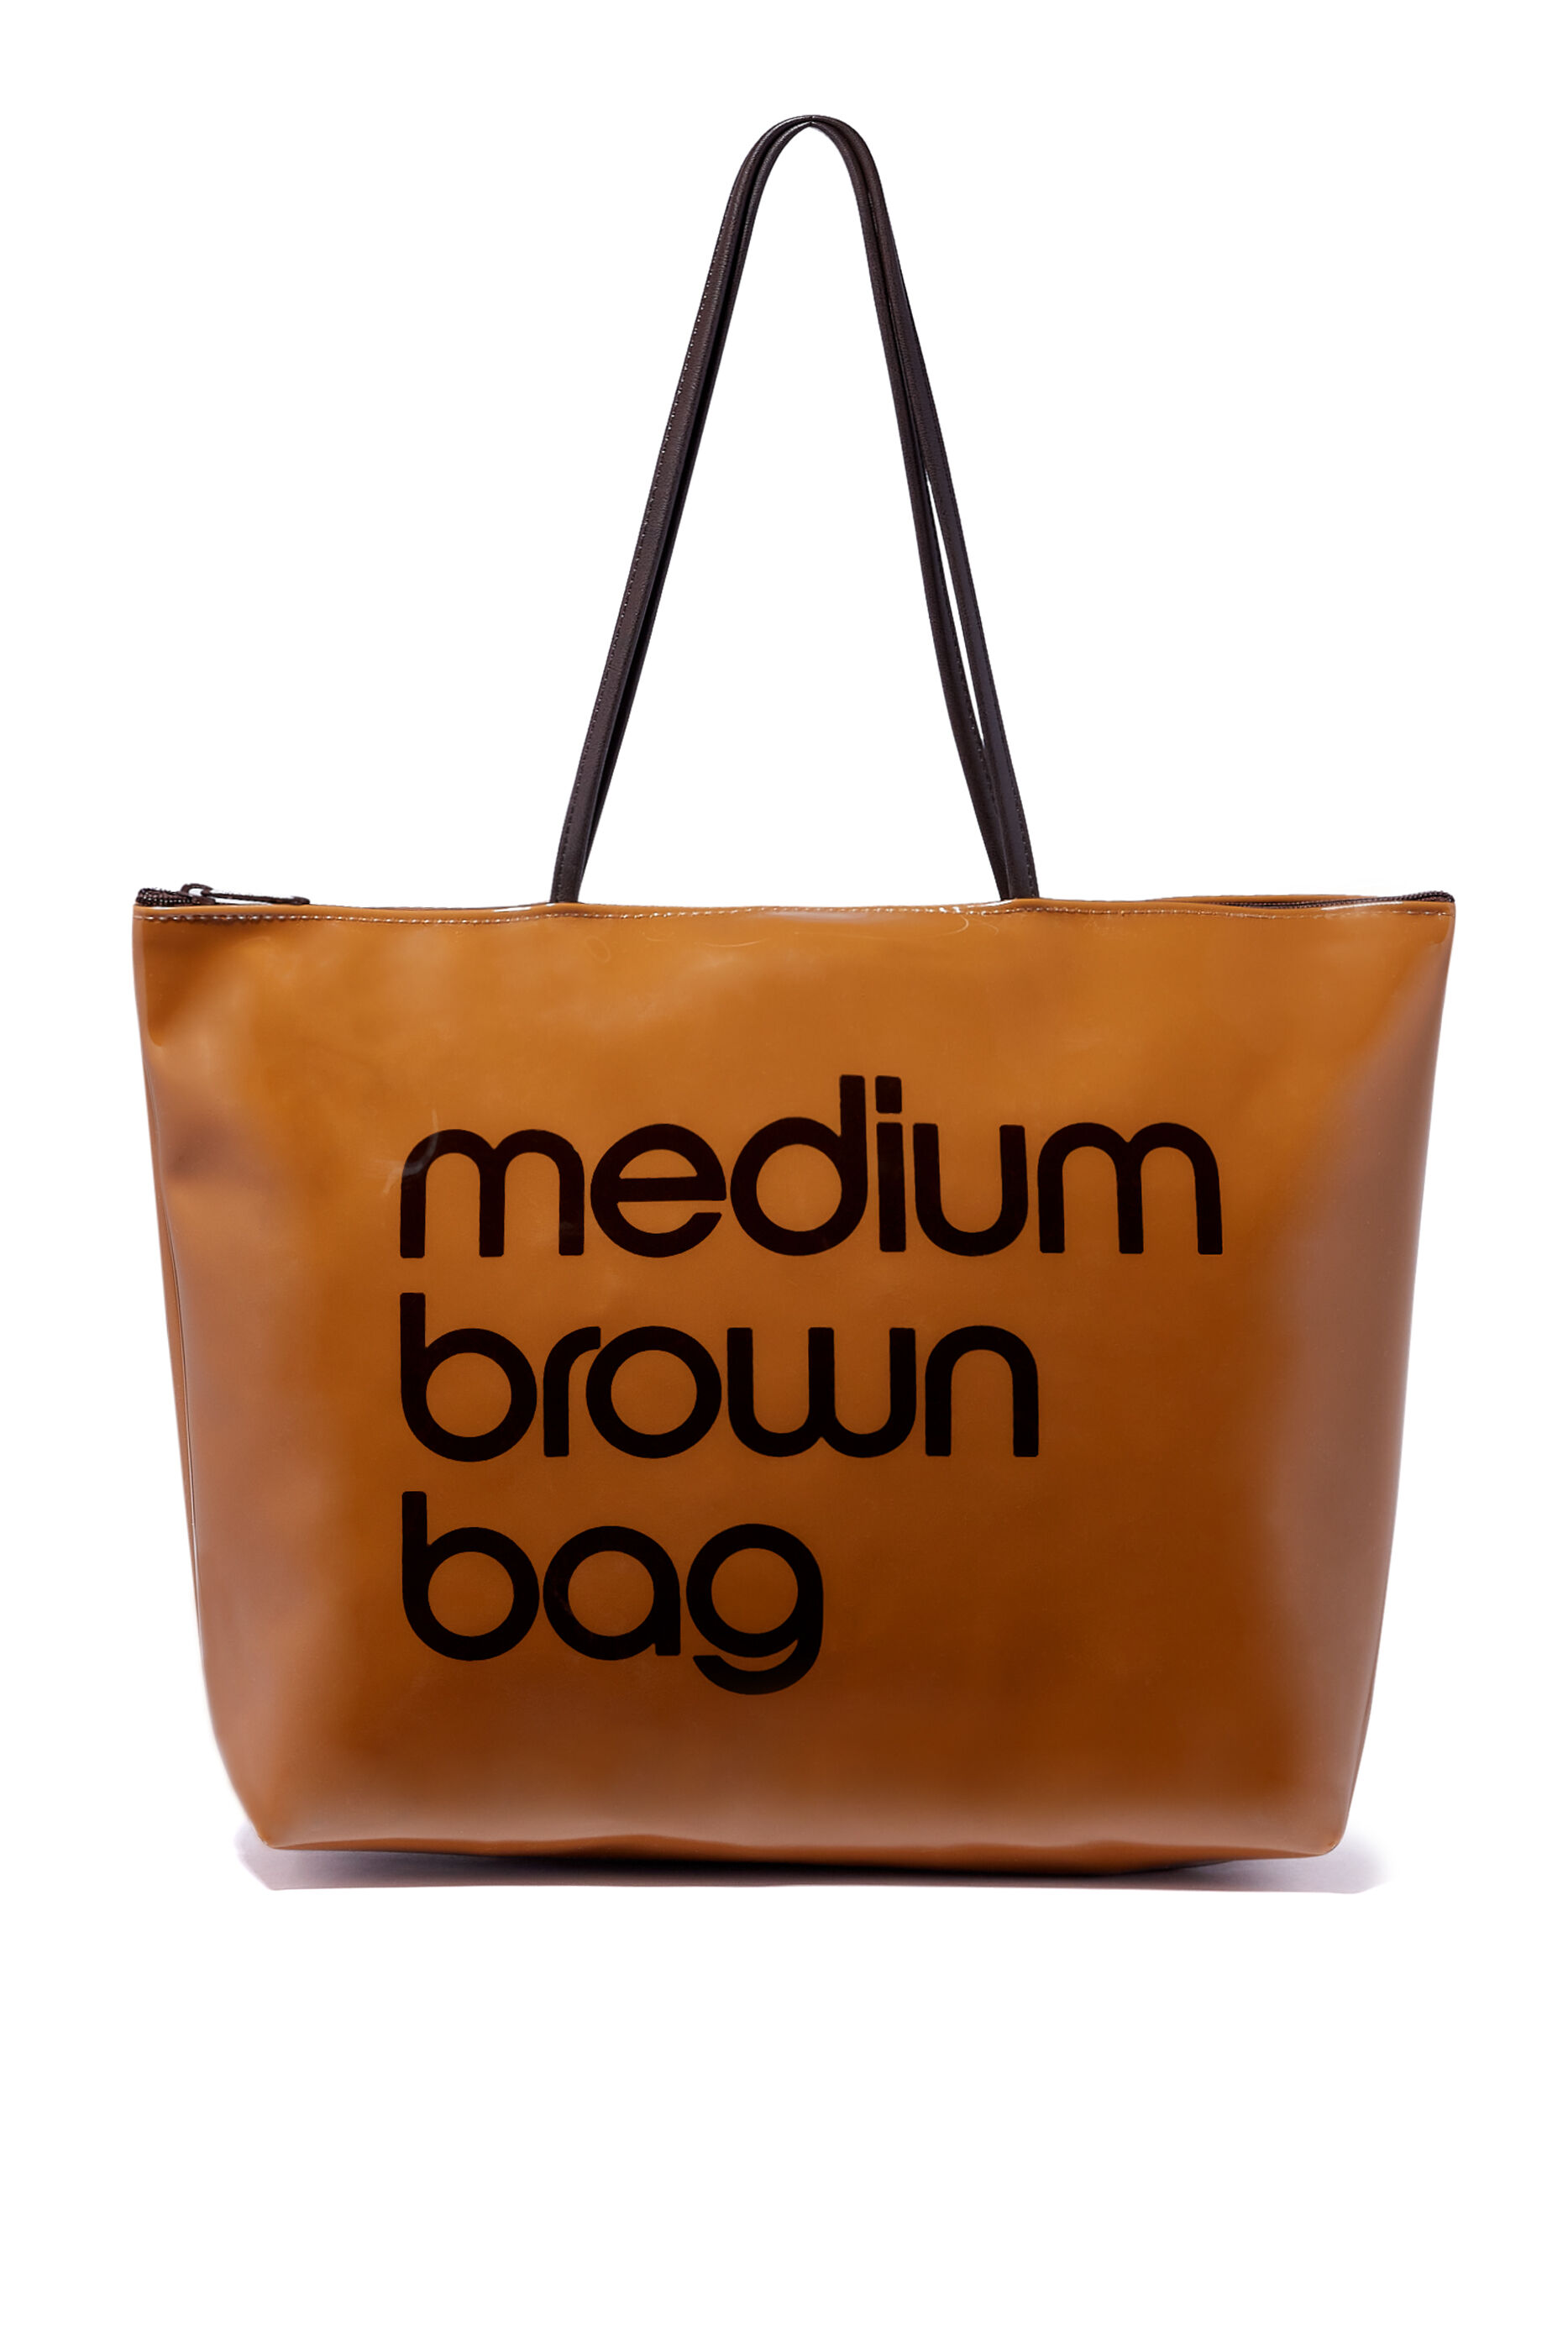 Bloomingdale's Unboxing / Zip Top Medium Brown Bag - YouTube